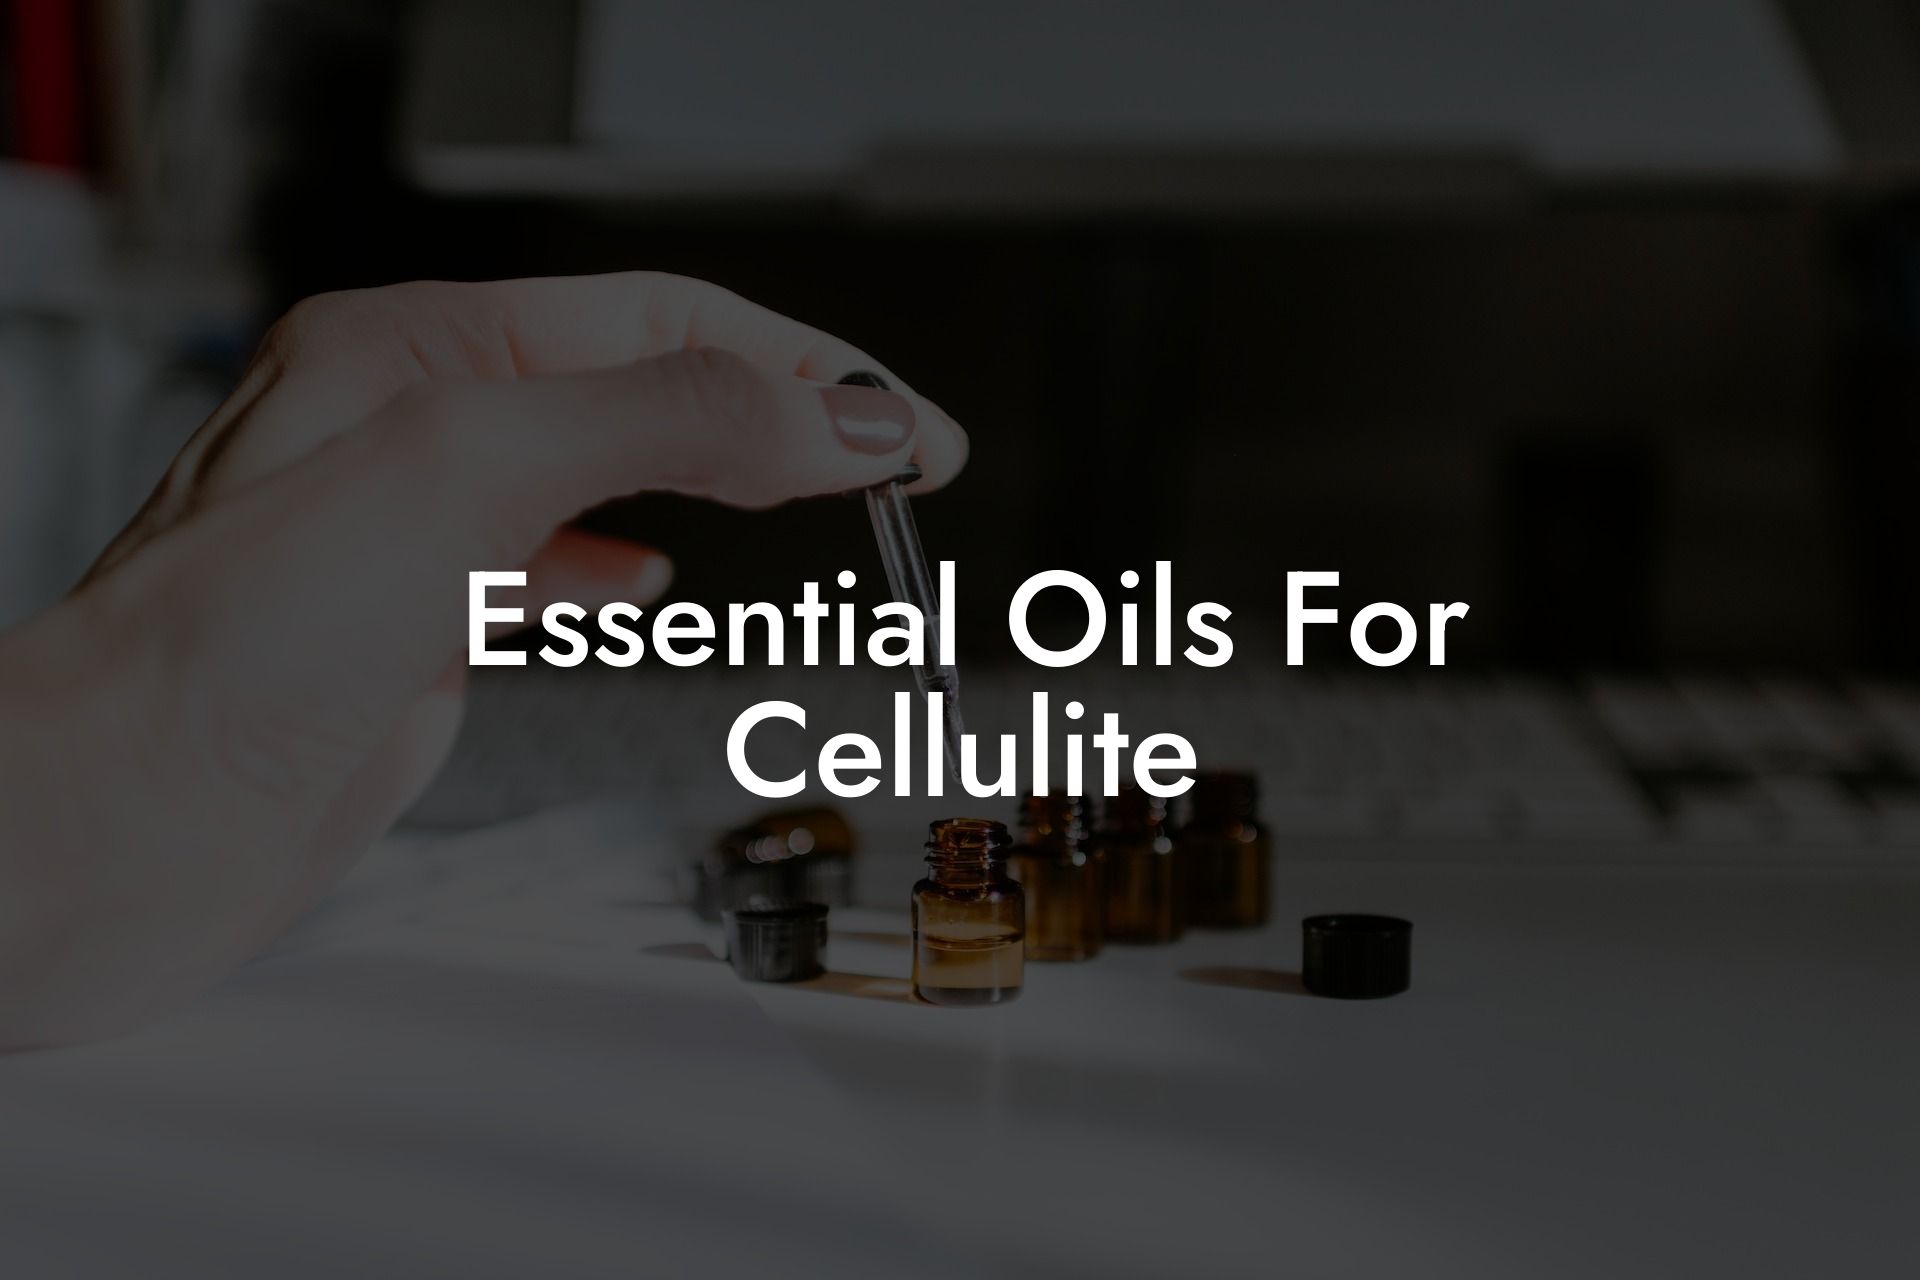 Essential Oils For Cellulite